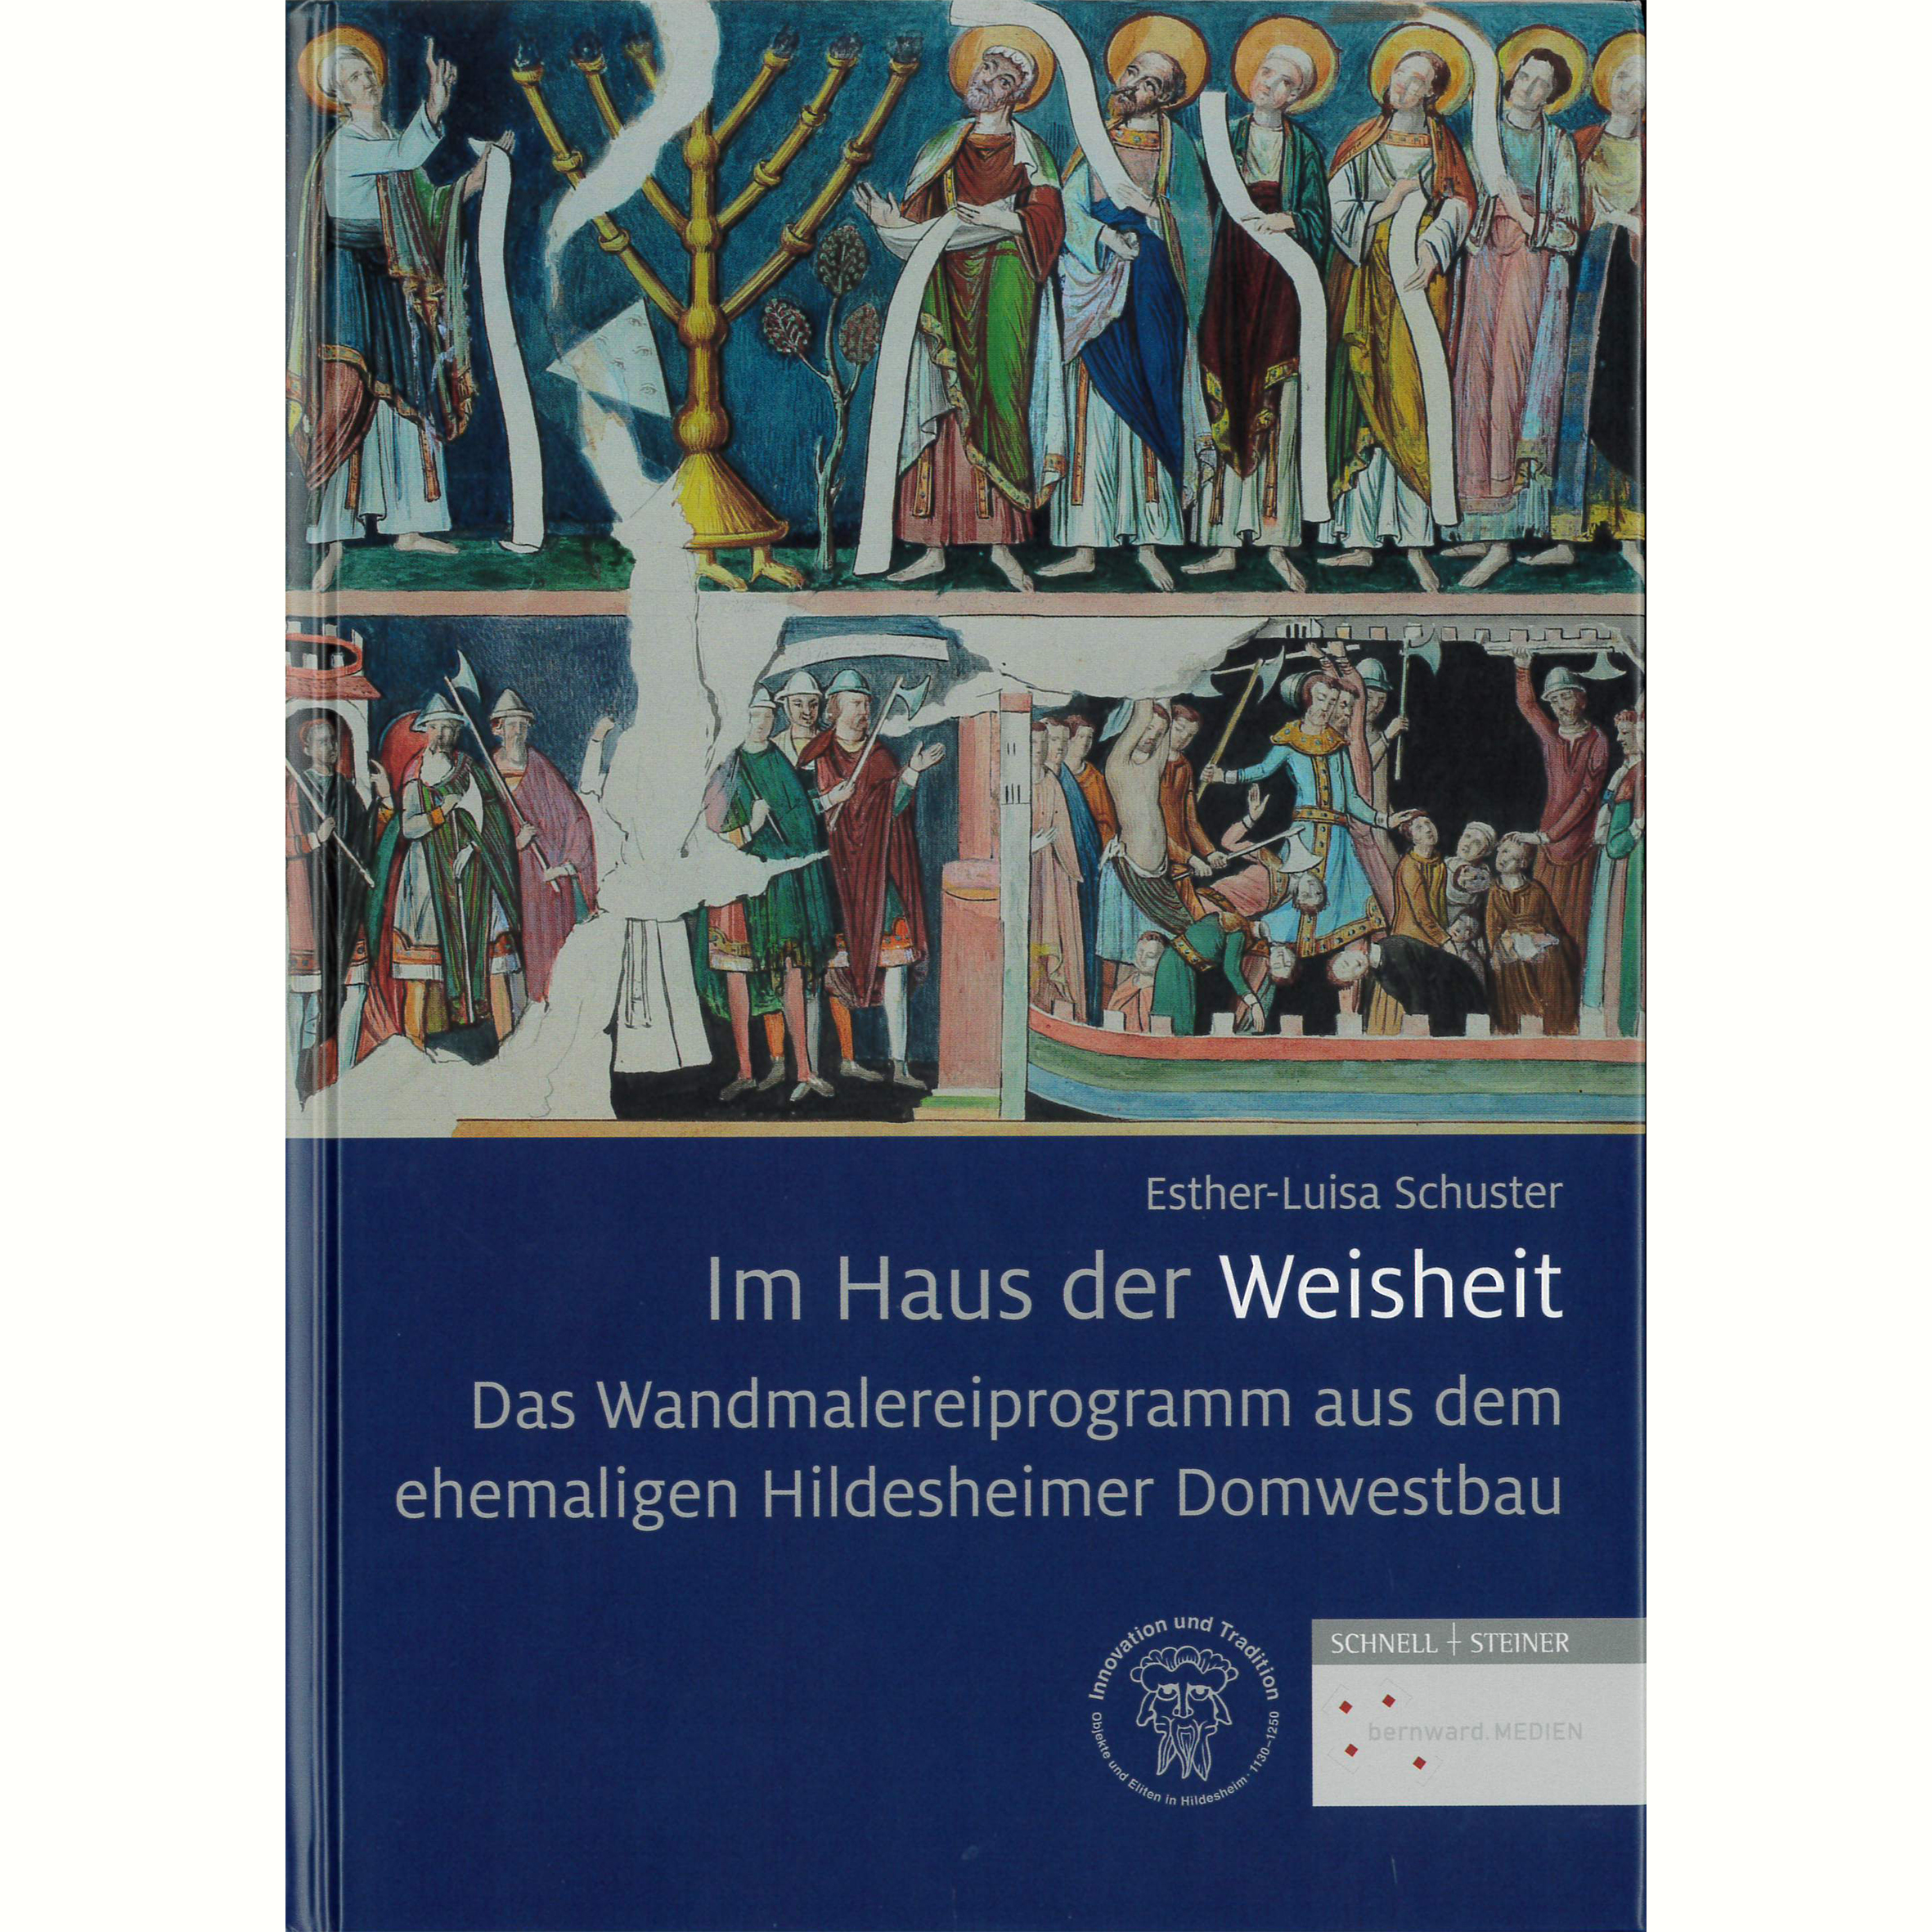 Das Wandmalereiprogramm aus dem ehemaligen Hildesheimer Domwestbau